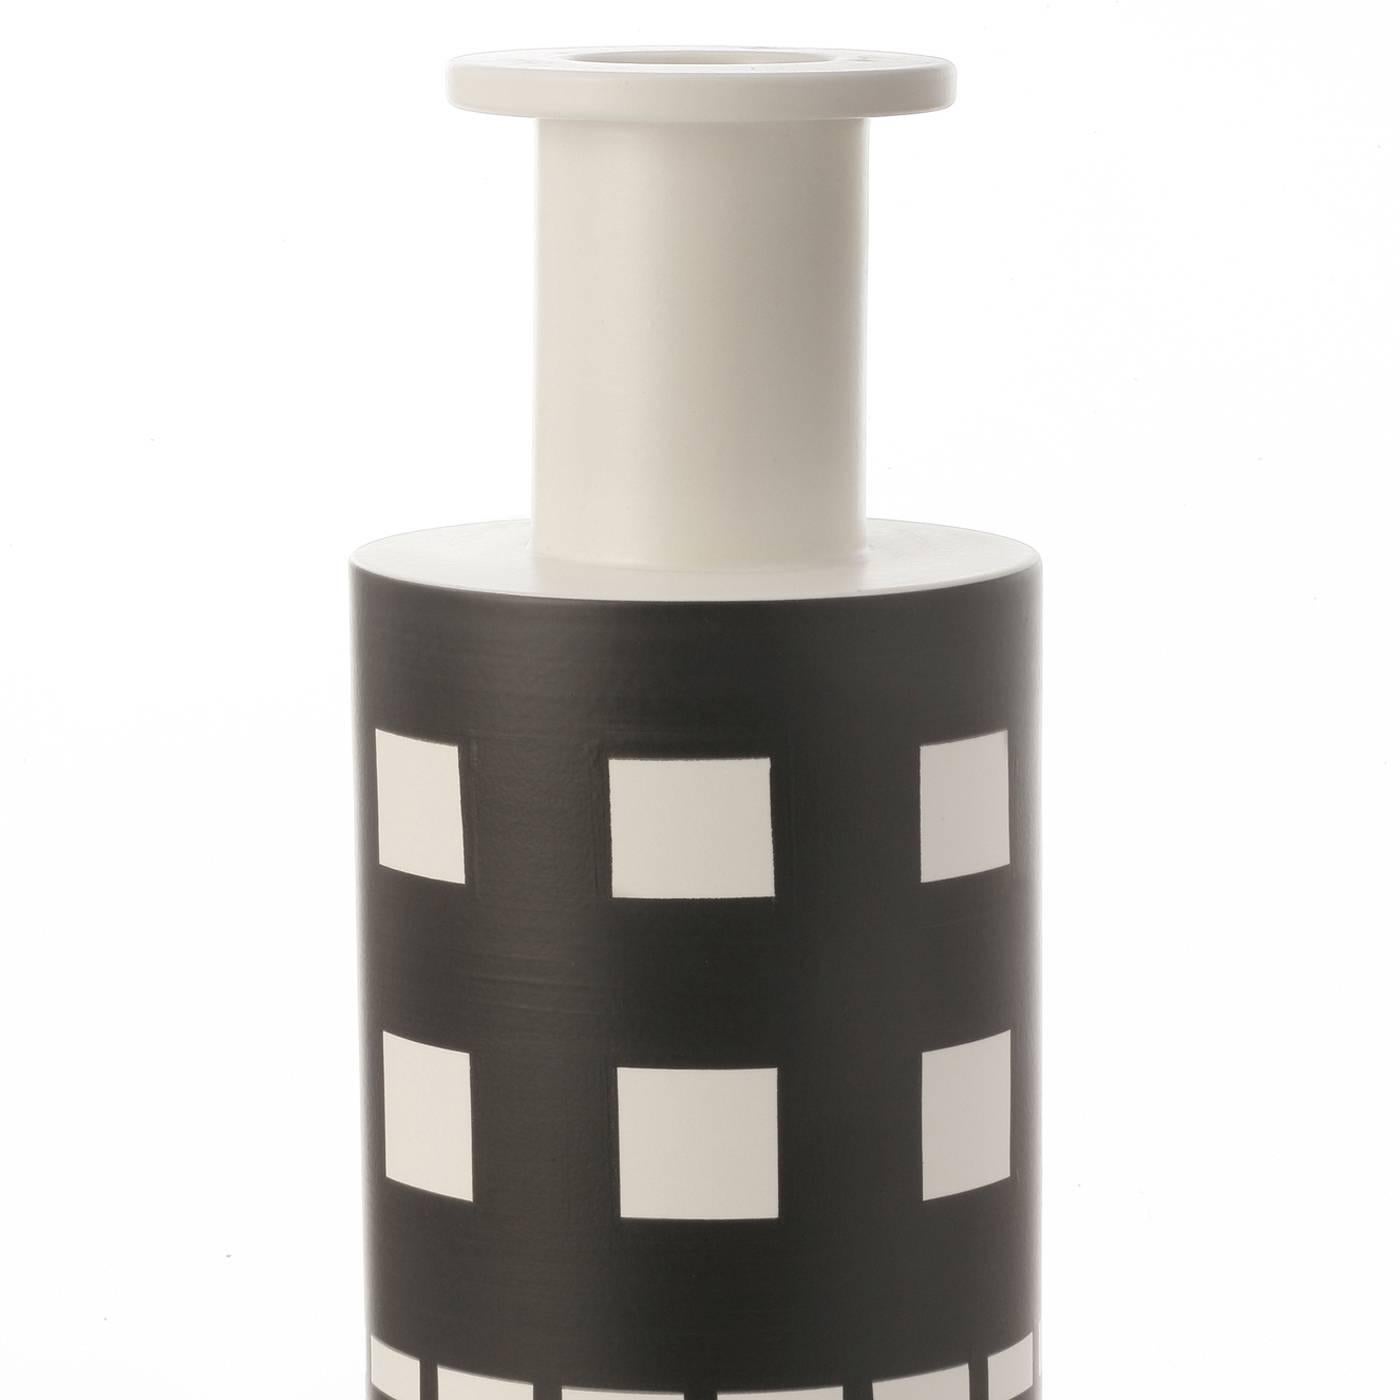 Die schlichte Form dieser Vase wird durch ihr geometrisches Dekor ergänzt, das auf dem weißen Hintergrund der zylindrischen Form markante Motive in Schwarz zeigt. Dieses Stück wurde 1962 von dem berühmten Architekten Ettore Sottsass entworfen.